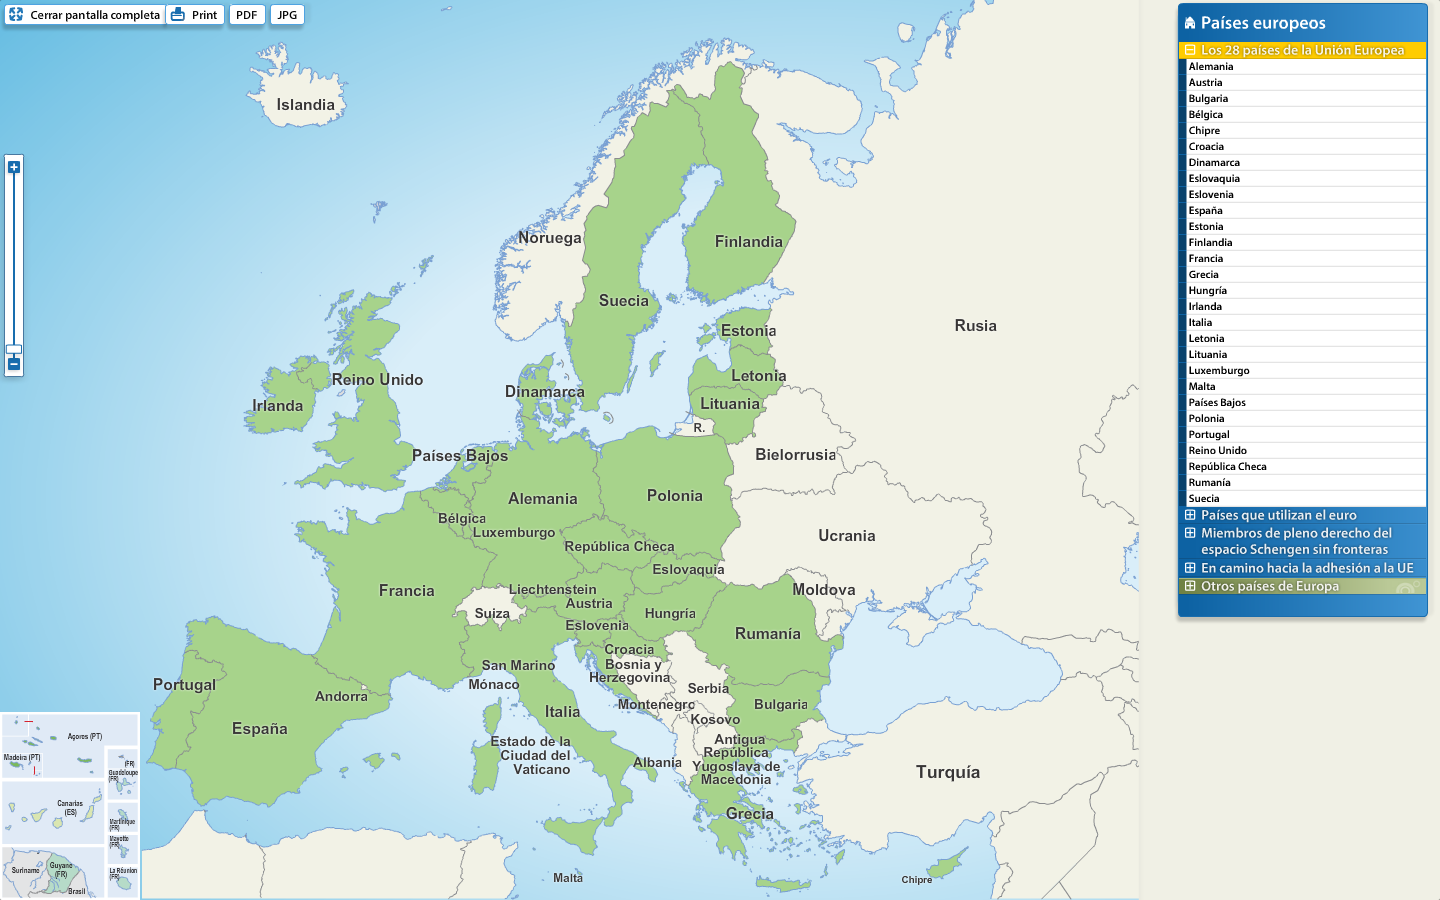 Unión Europea: Mapa de los 28 países que componen la Unión europea